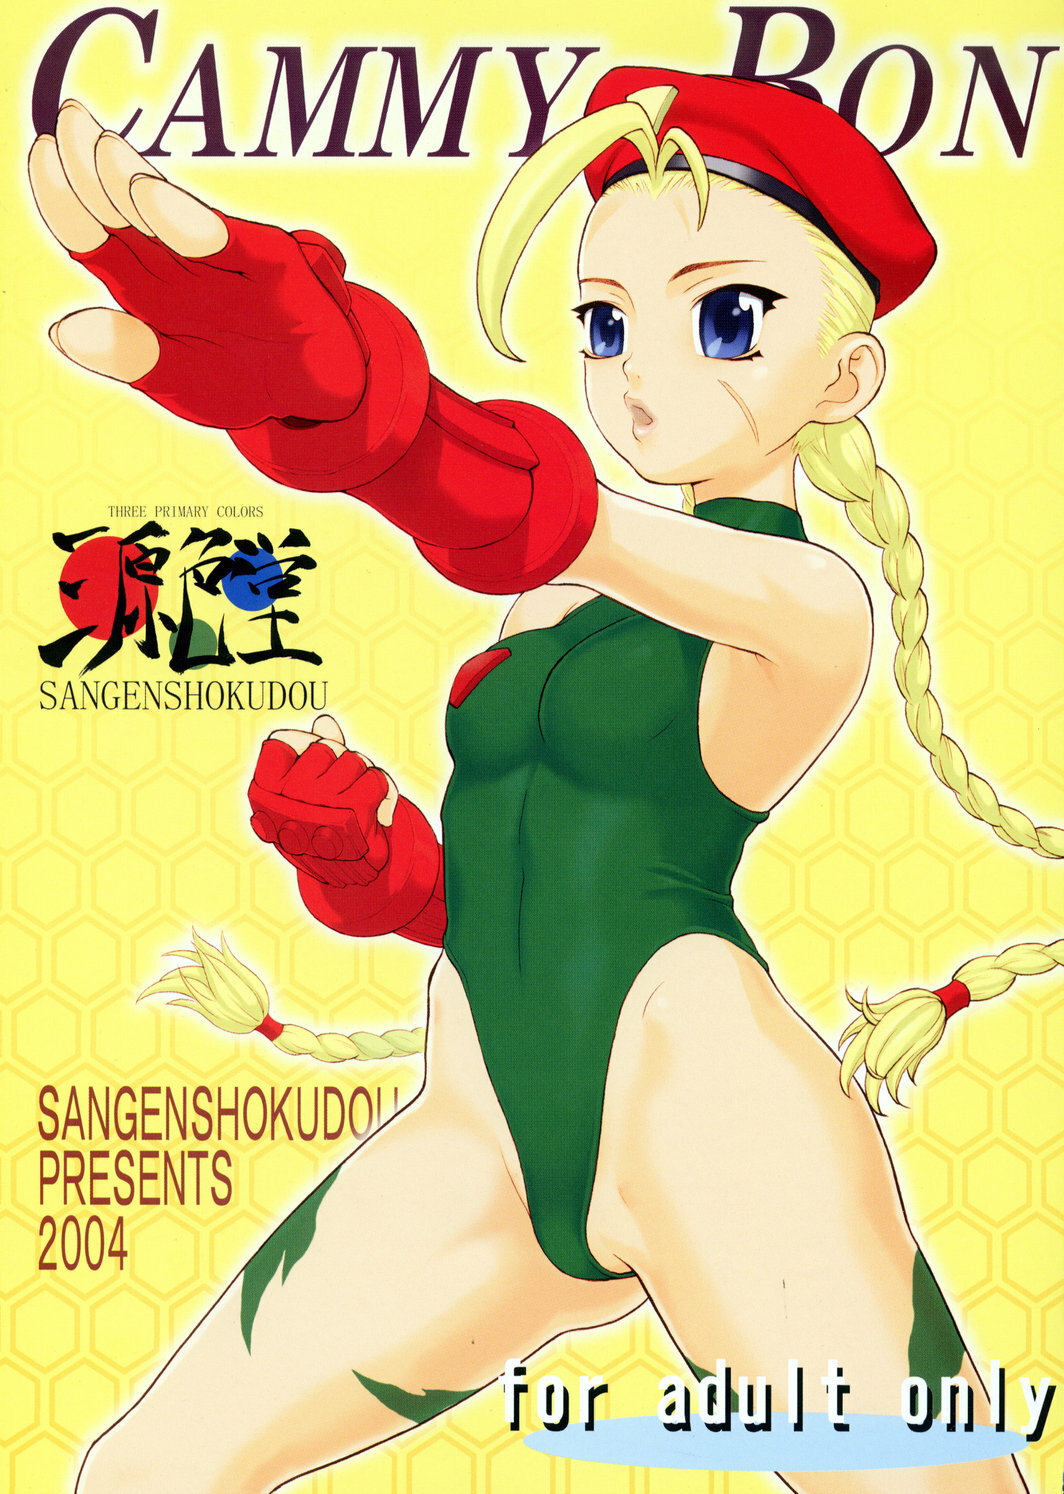 (C66) [Sangenshokudou (Chikasato Michiru)] CAMMY BON (Street Fighter) page 1 full